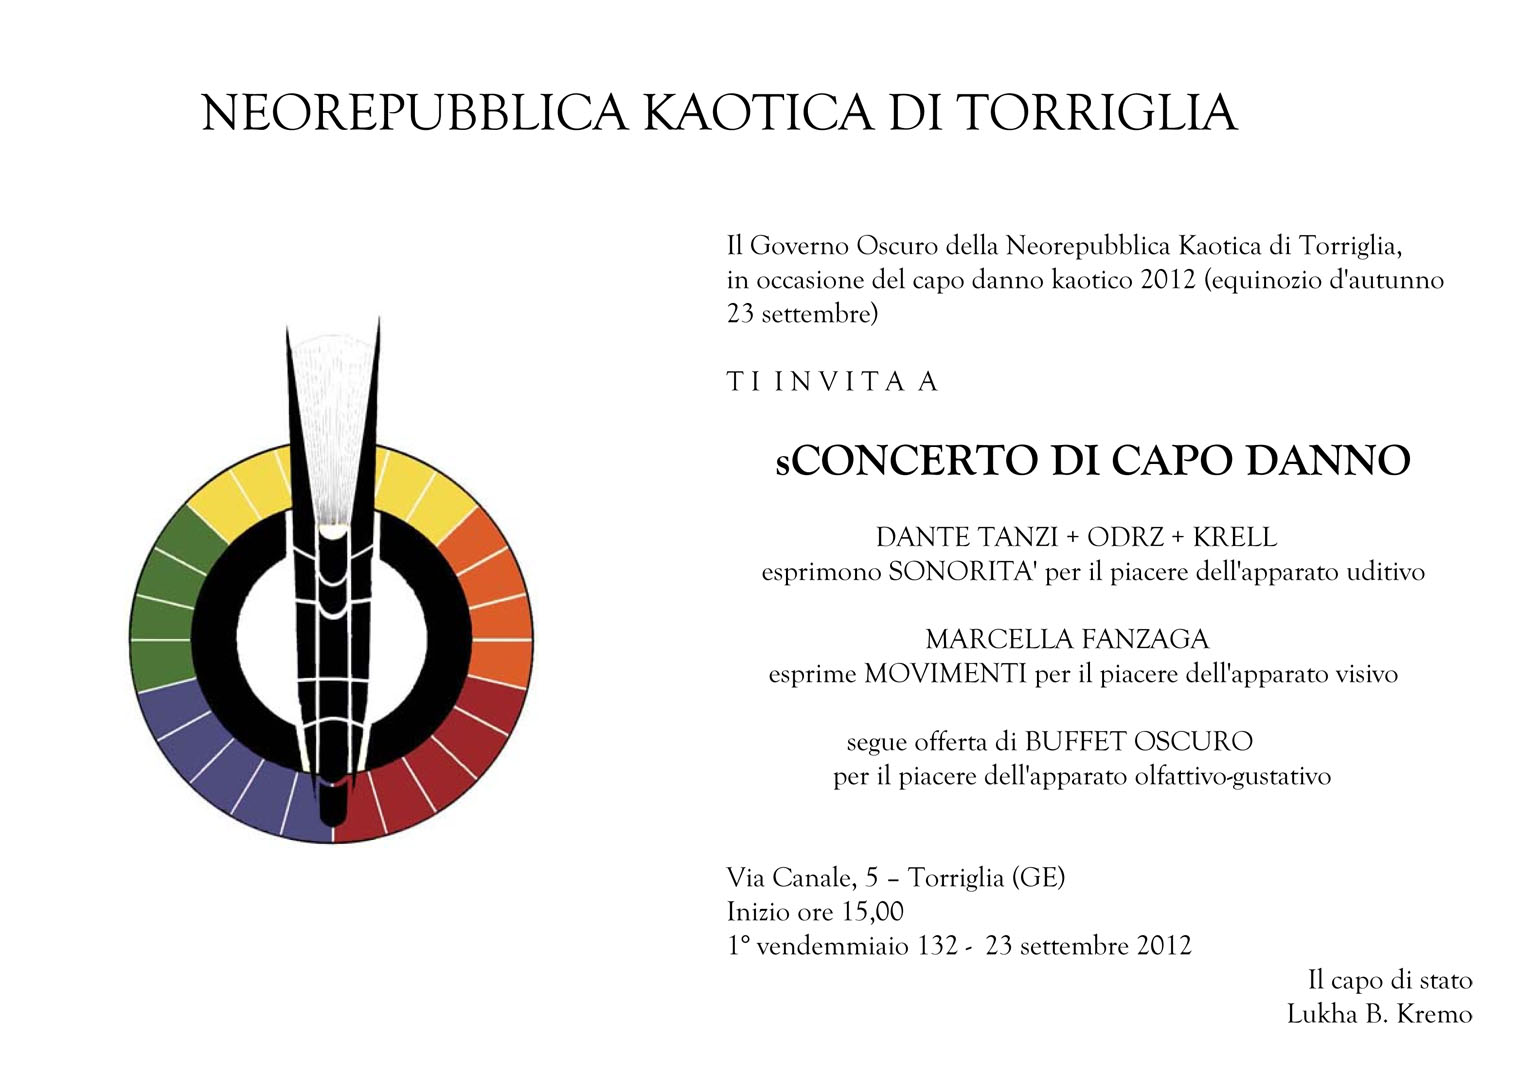 Invito dello sConcerto di Capo Danno 132 della neorepubblica di Torriglia